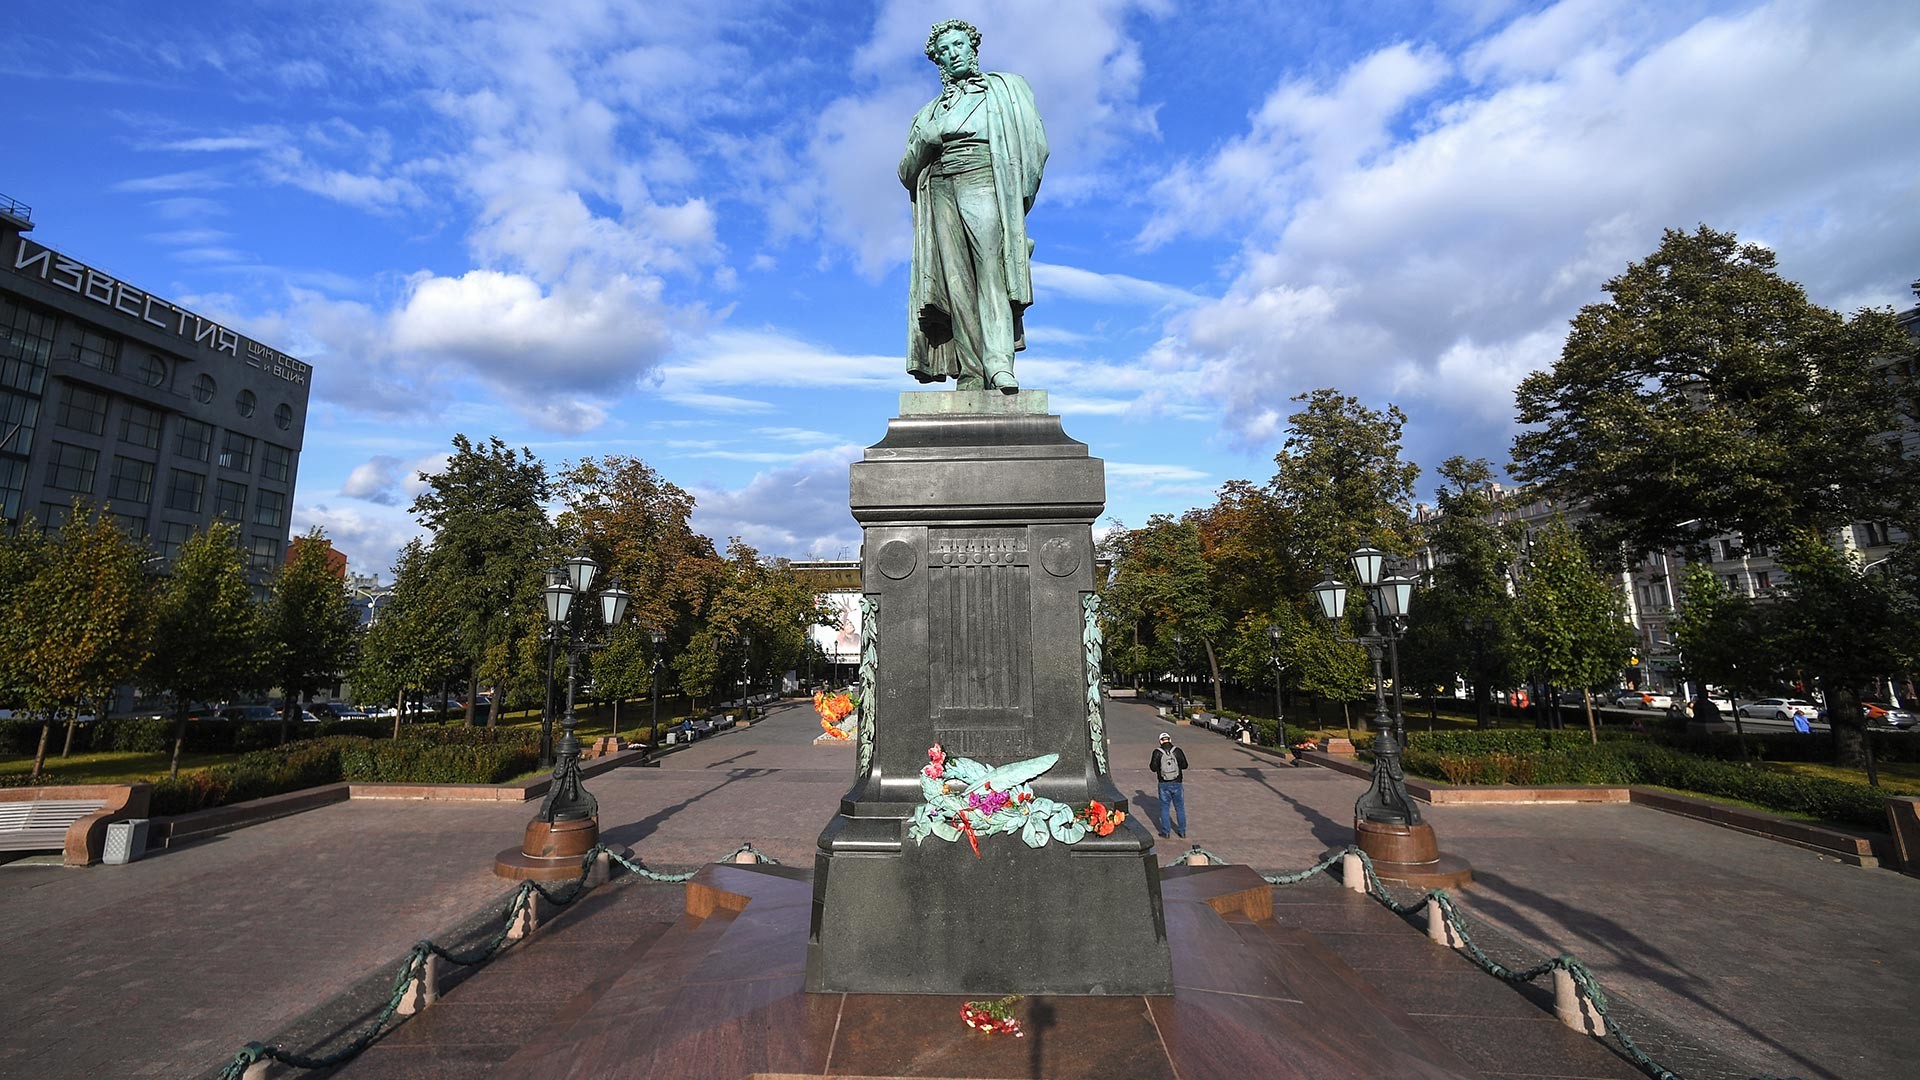 La statua di Pushkin in Piazza Pushkin a Mosca